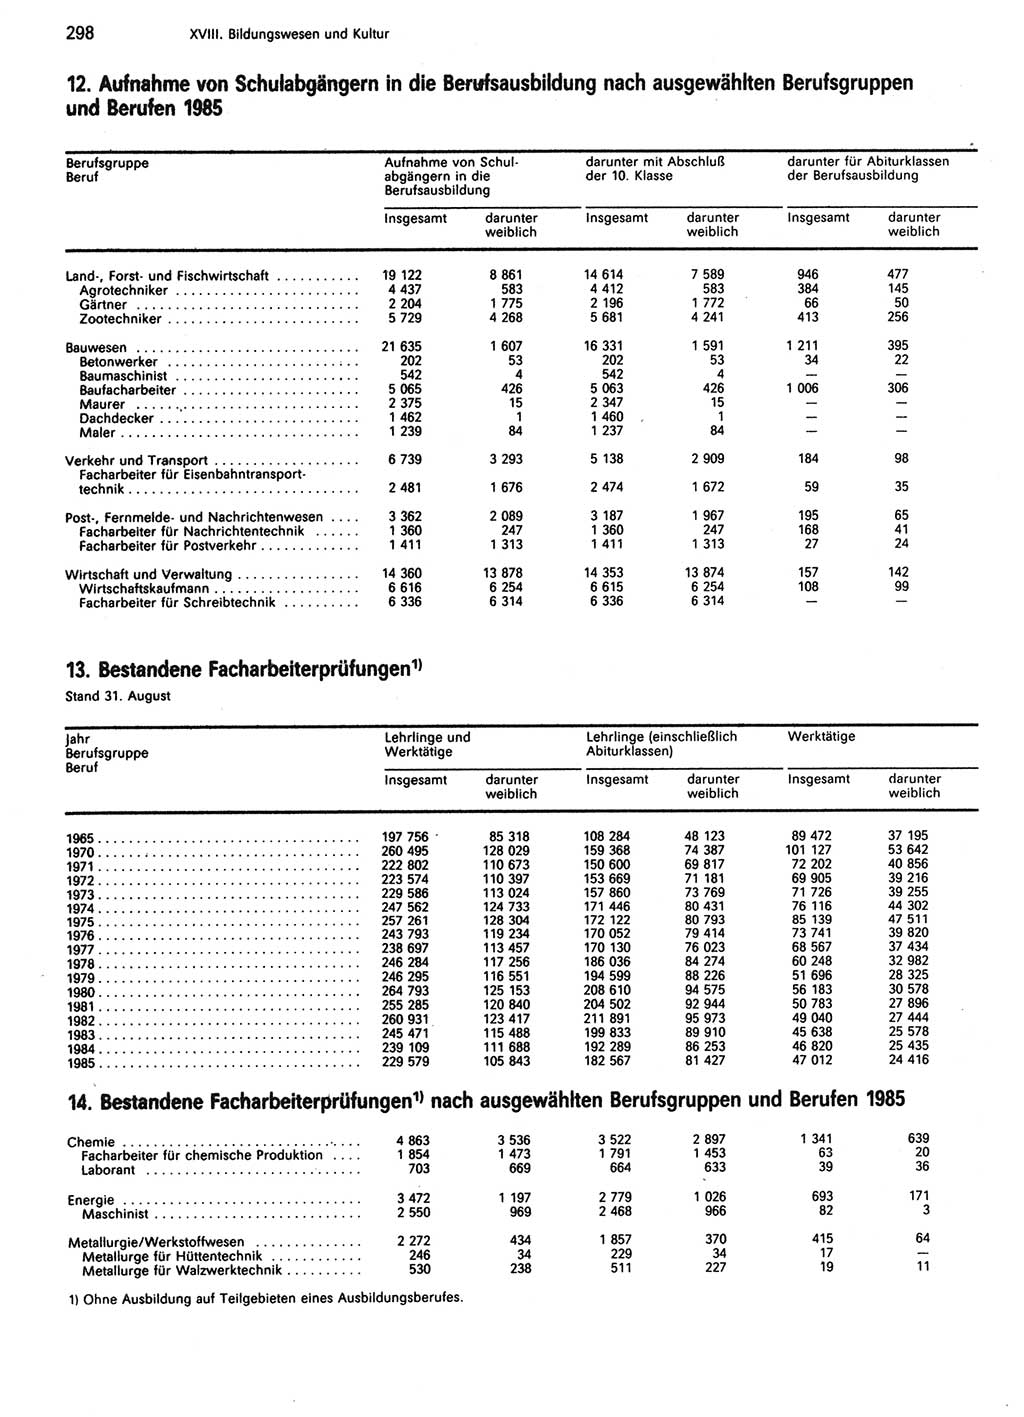 Statistisches Jahrbuch der Deutschen Demokratischen Republik (DDR) 1986, Seite 298 (Stat. Jb. DDR 1986, S. 298)